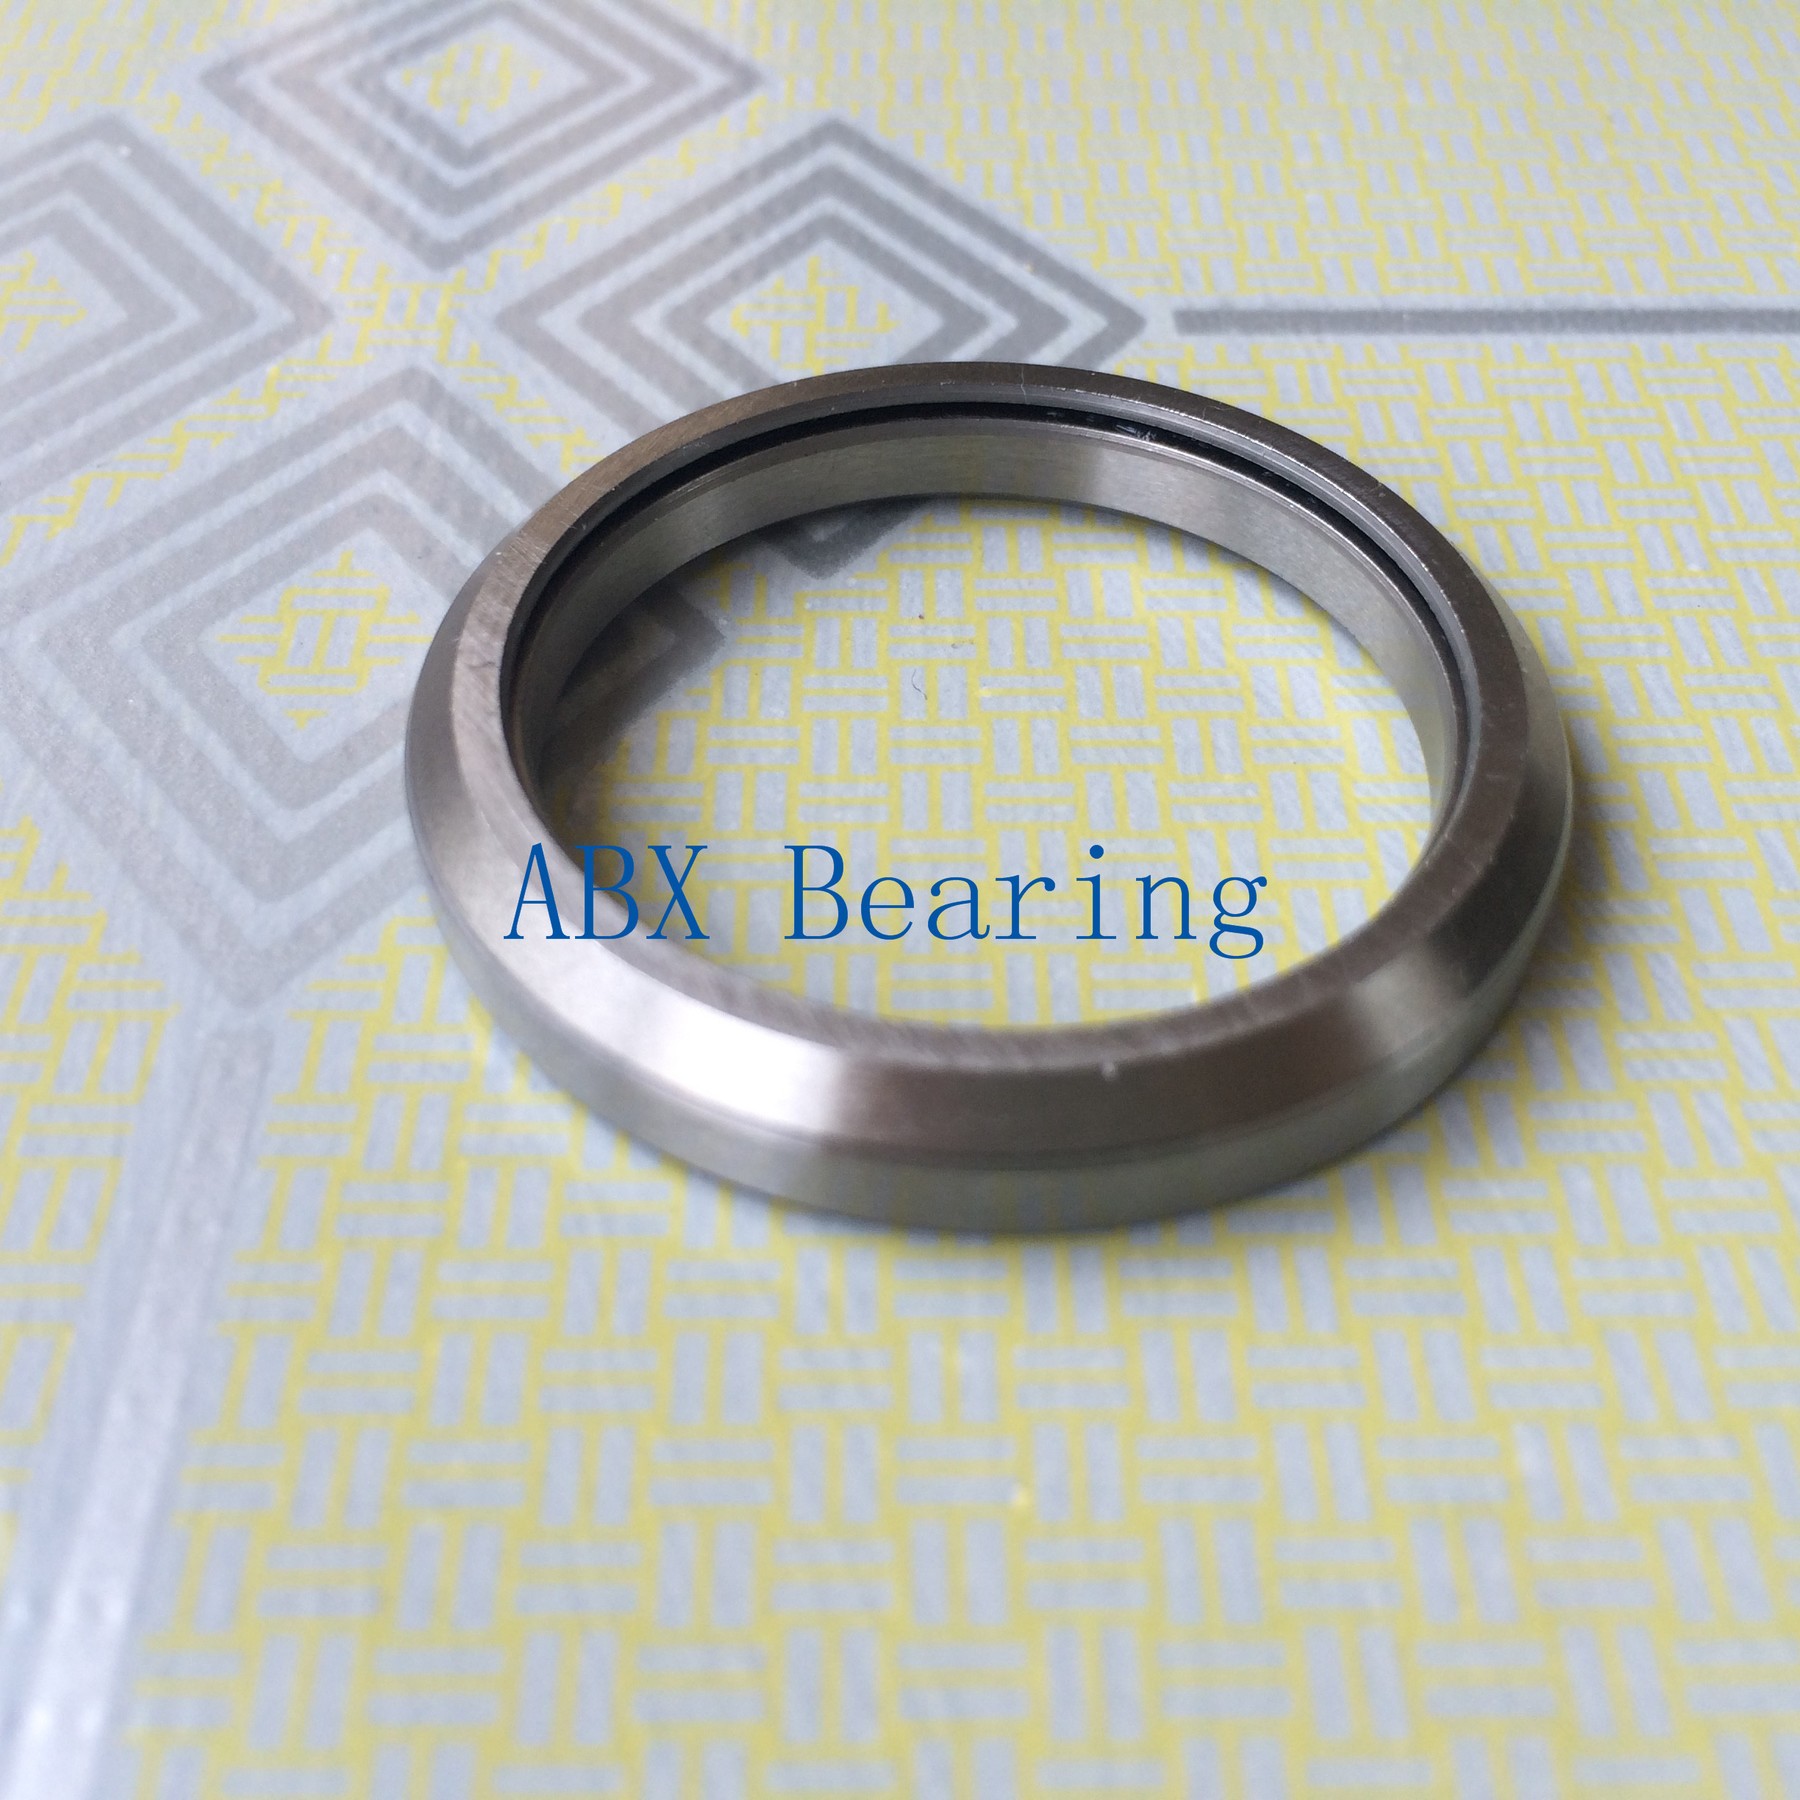 MR137 bearing 1-3/8" 34.925mm bicycle headset bearing (37x46.9x7mm, 45/45) repair bearing